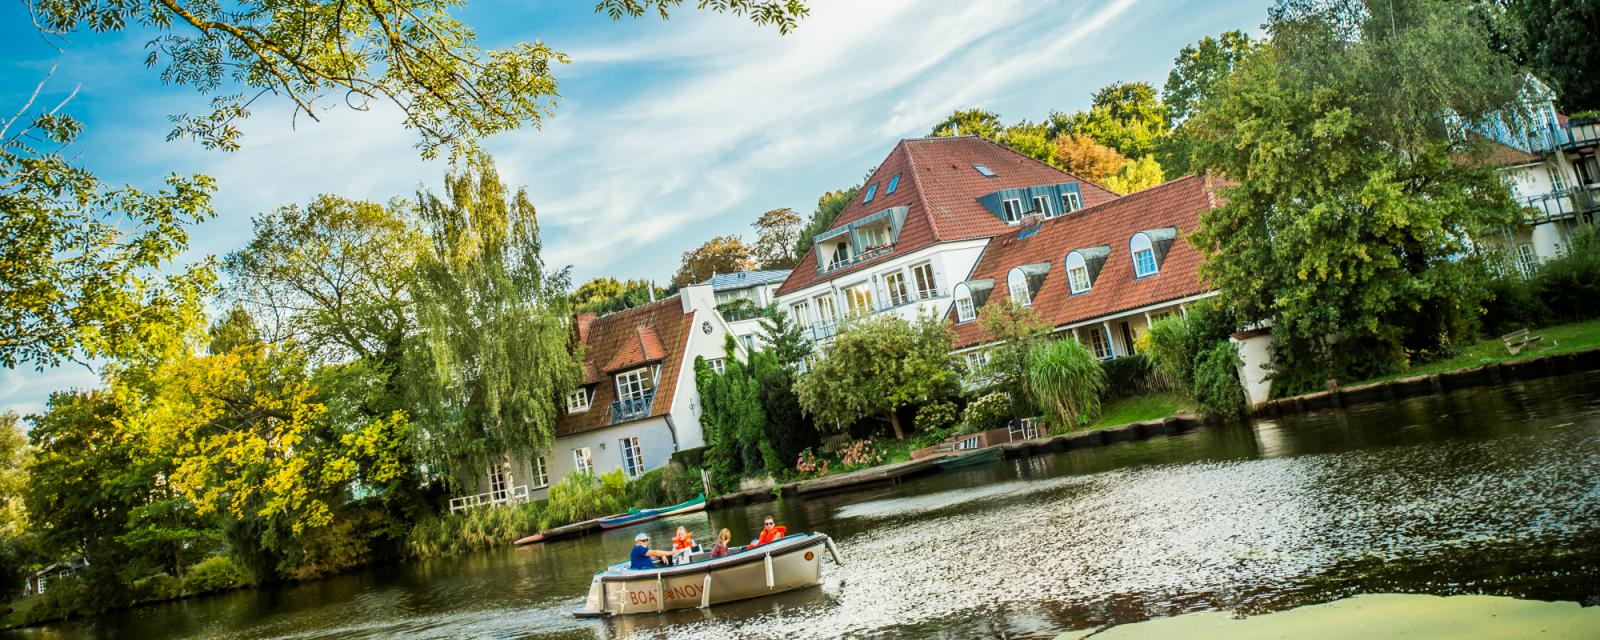 Varen door Lübeck: ontdek de stad vanaf het water 